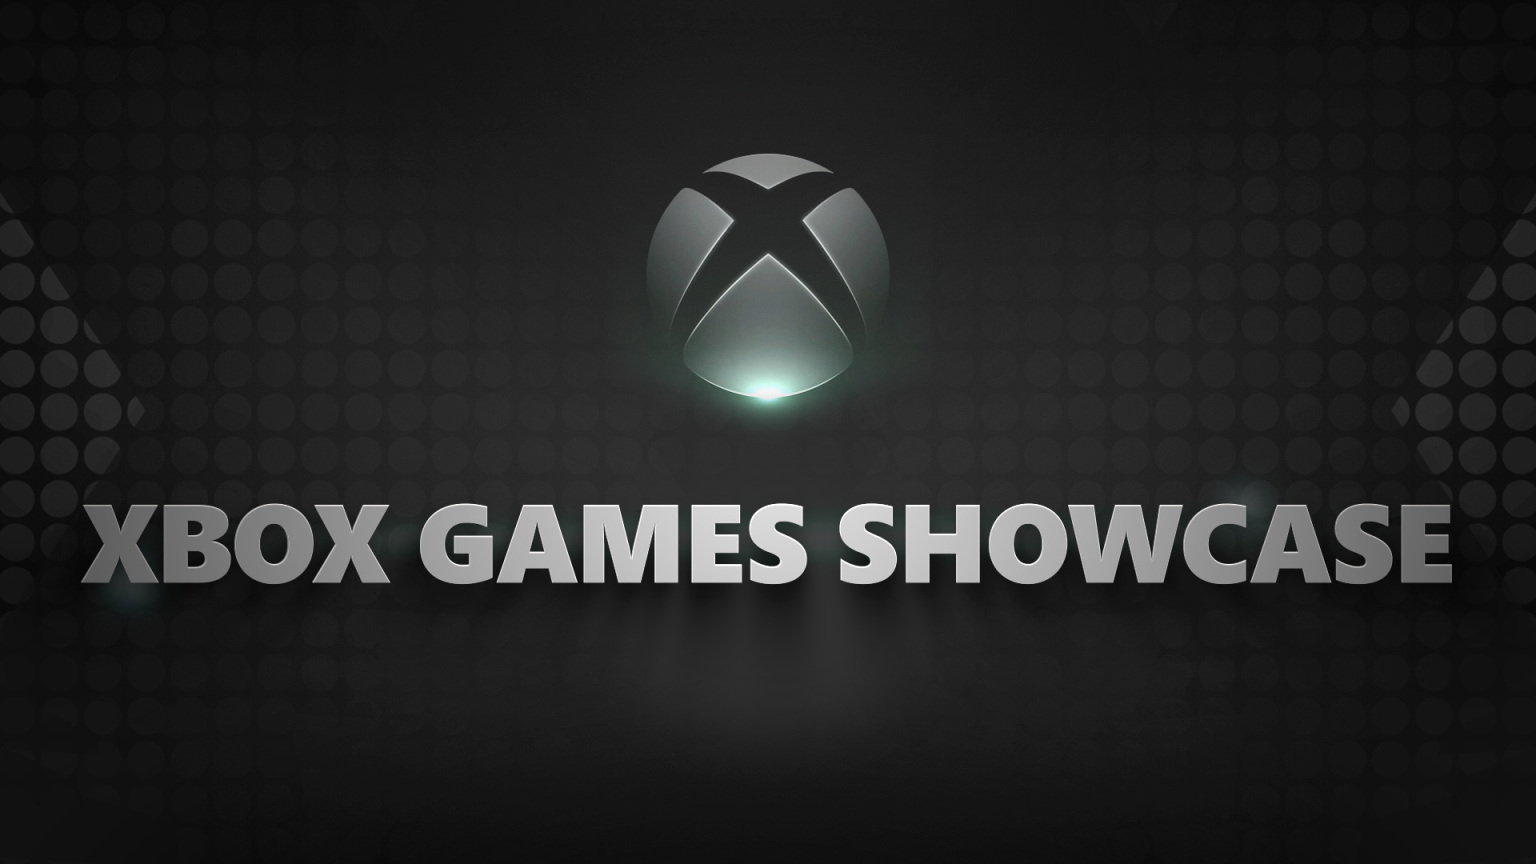 Xbox Games Showcase introduce el catálogo de juegos más grande, creativo y diverso en la historia de las consolas